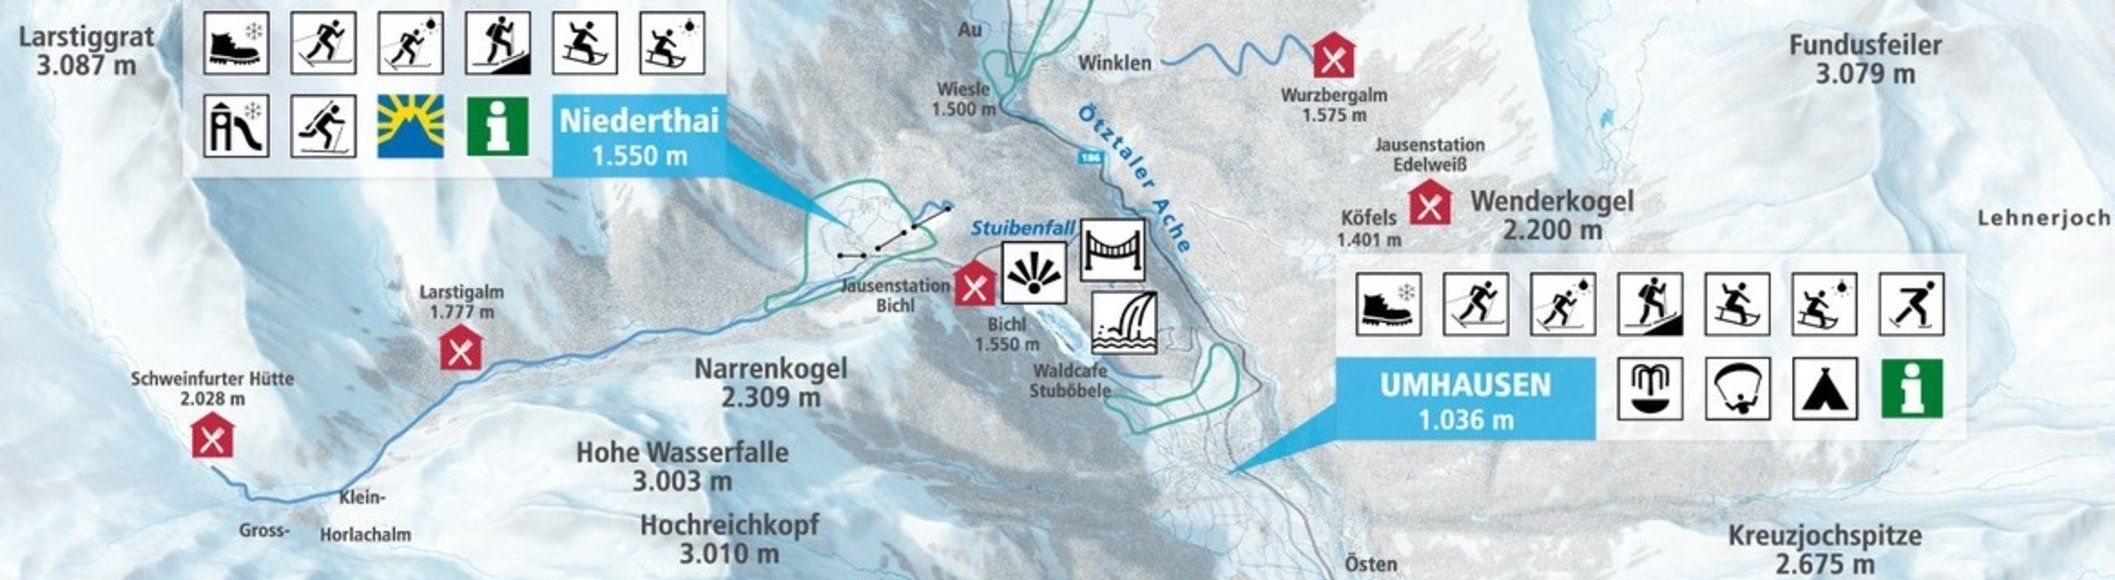 Pistenplan / Karte Skigebiet Umhausen, 